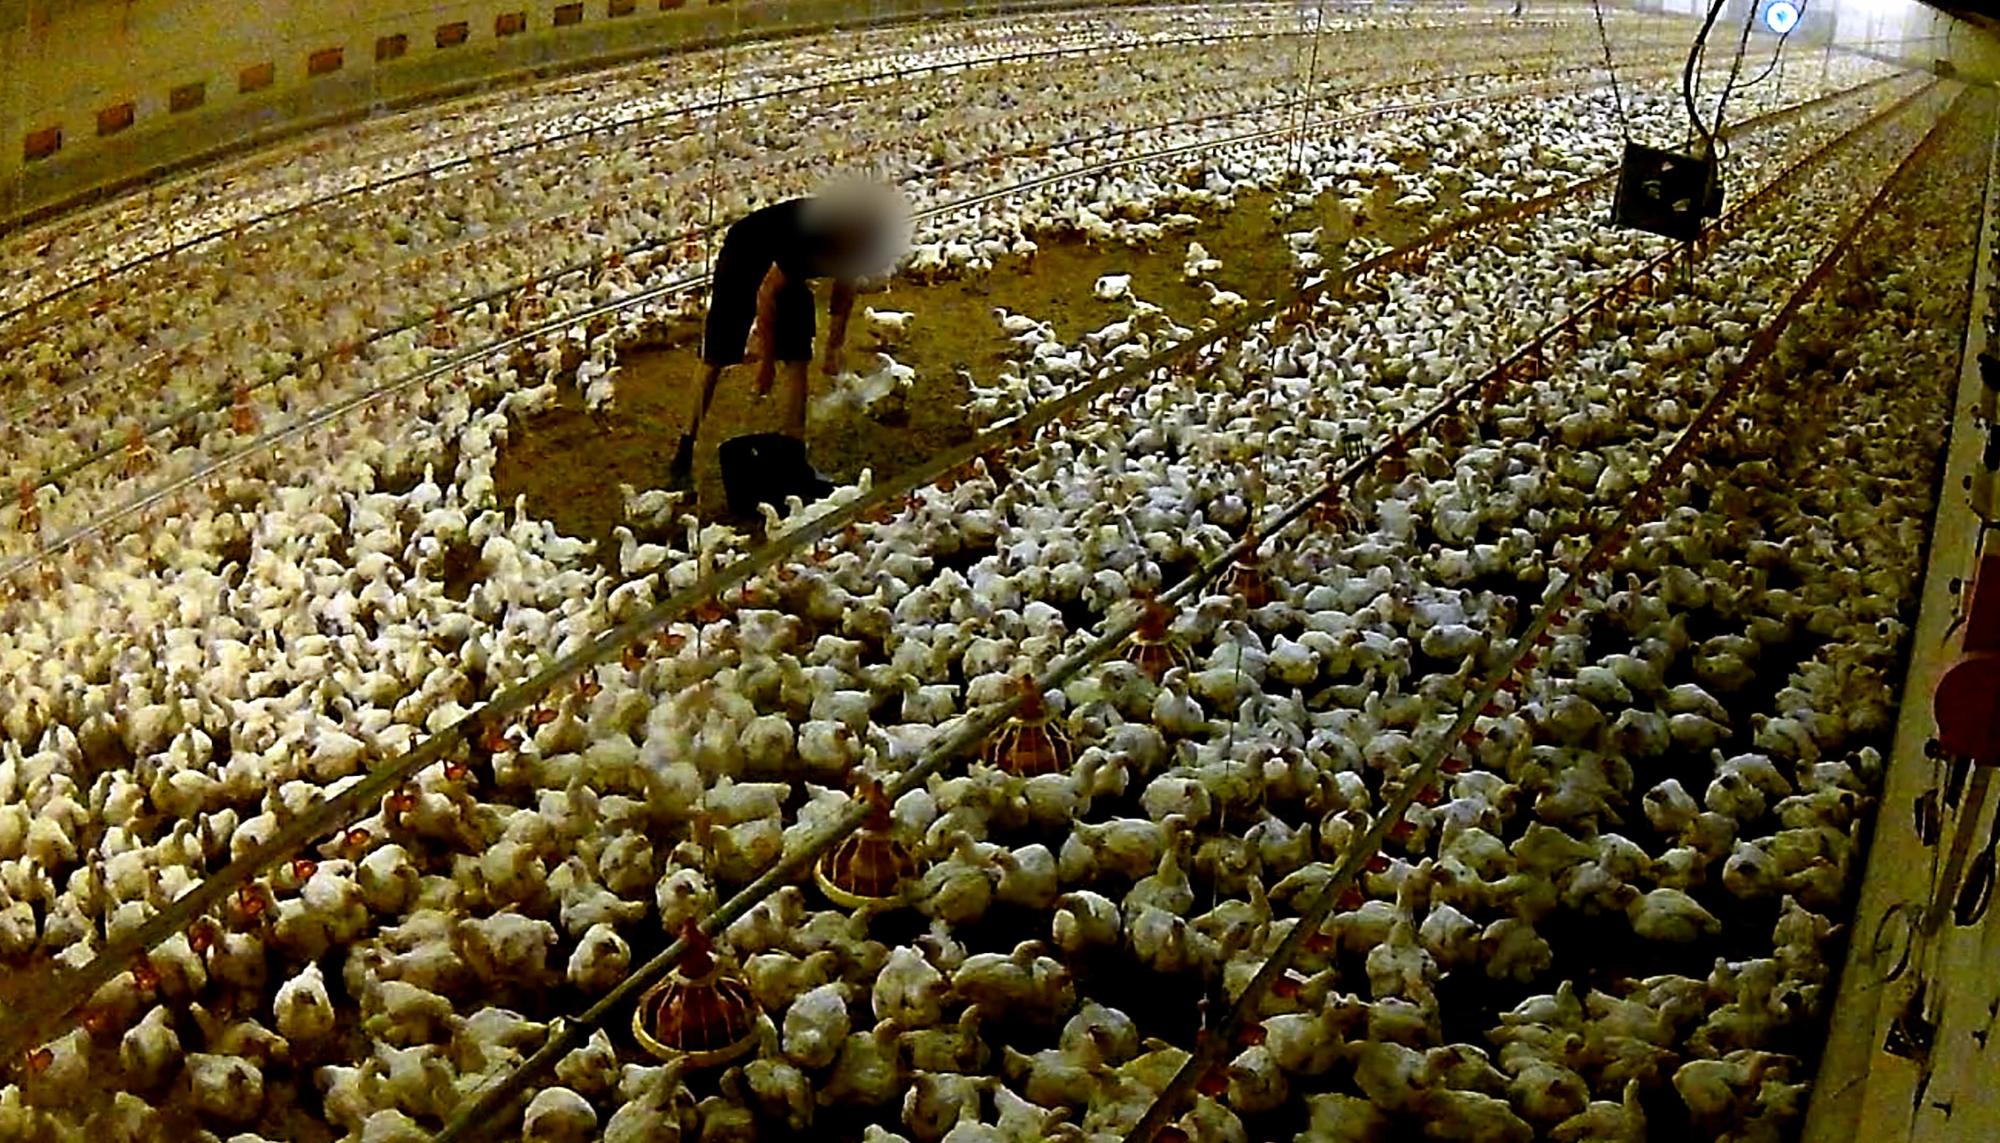 Investigación de Equalia sobre maltrato animal en granjas avícolas alemanas vinculadas a Lidl - 4